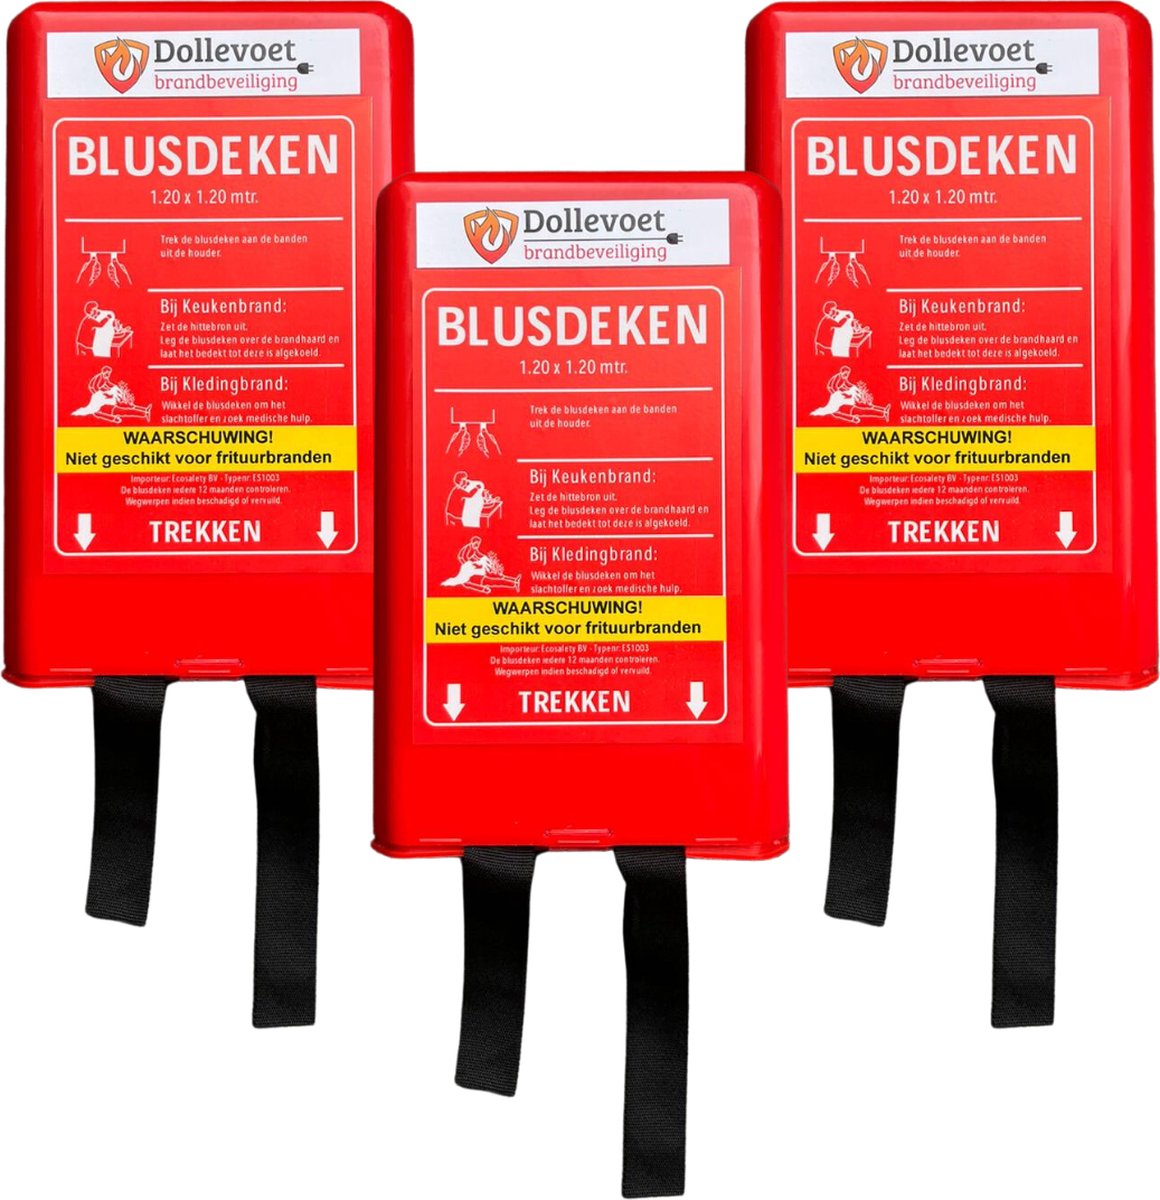 3x Blusdeken 1.20m x 1.20m - In harde kunststof box - voldoet aan EU-norm EN1869 - blusdeken - Dollevoet Brandbeveiliging